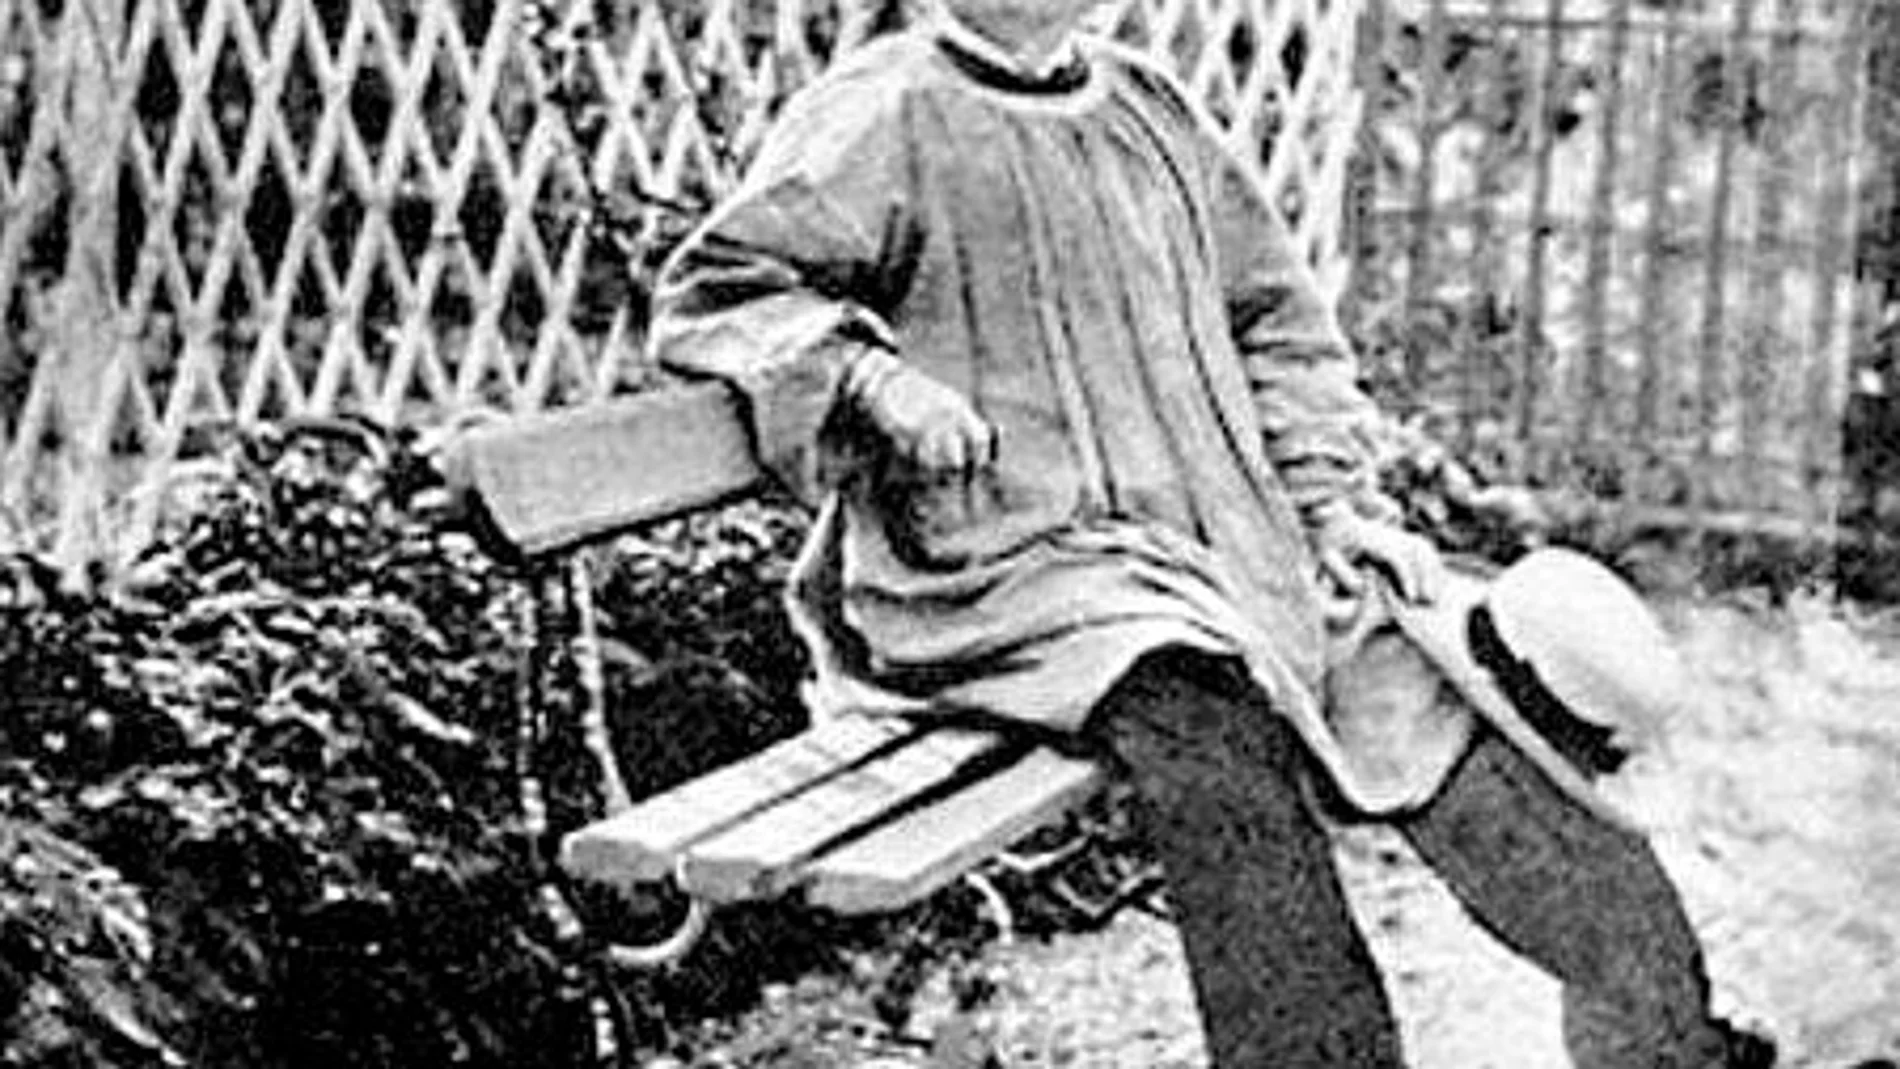 La pintora francesa Rosa Bonheur (1822-1899) fue la primera mujer, de la que se tenga constancia, en vestir pantalones, además de llevar el pelo corto y fumar habanos